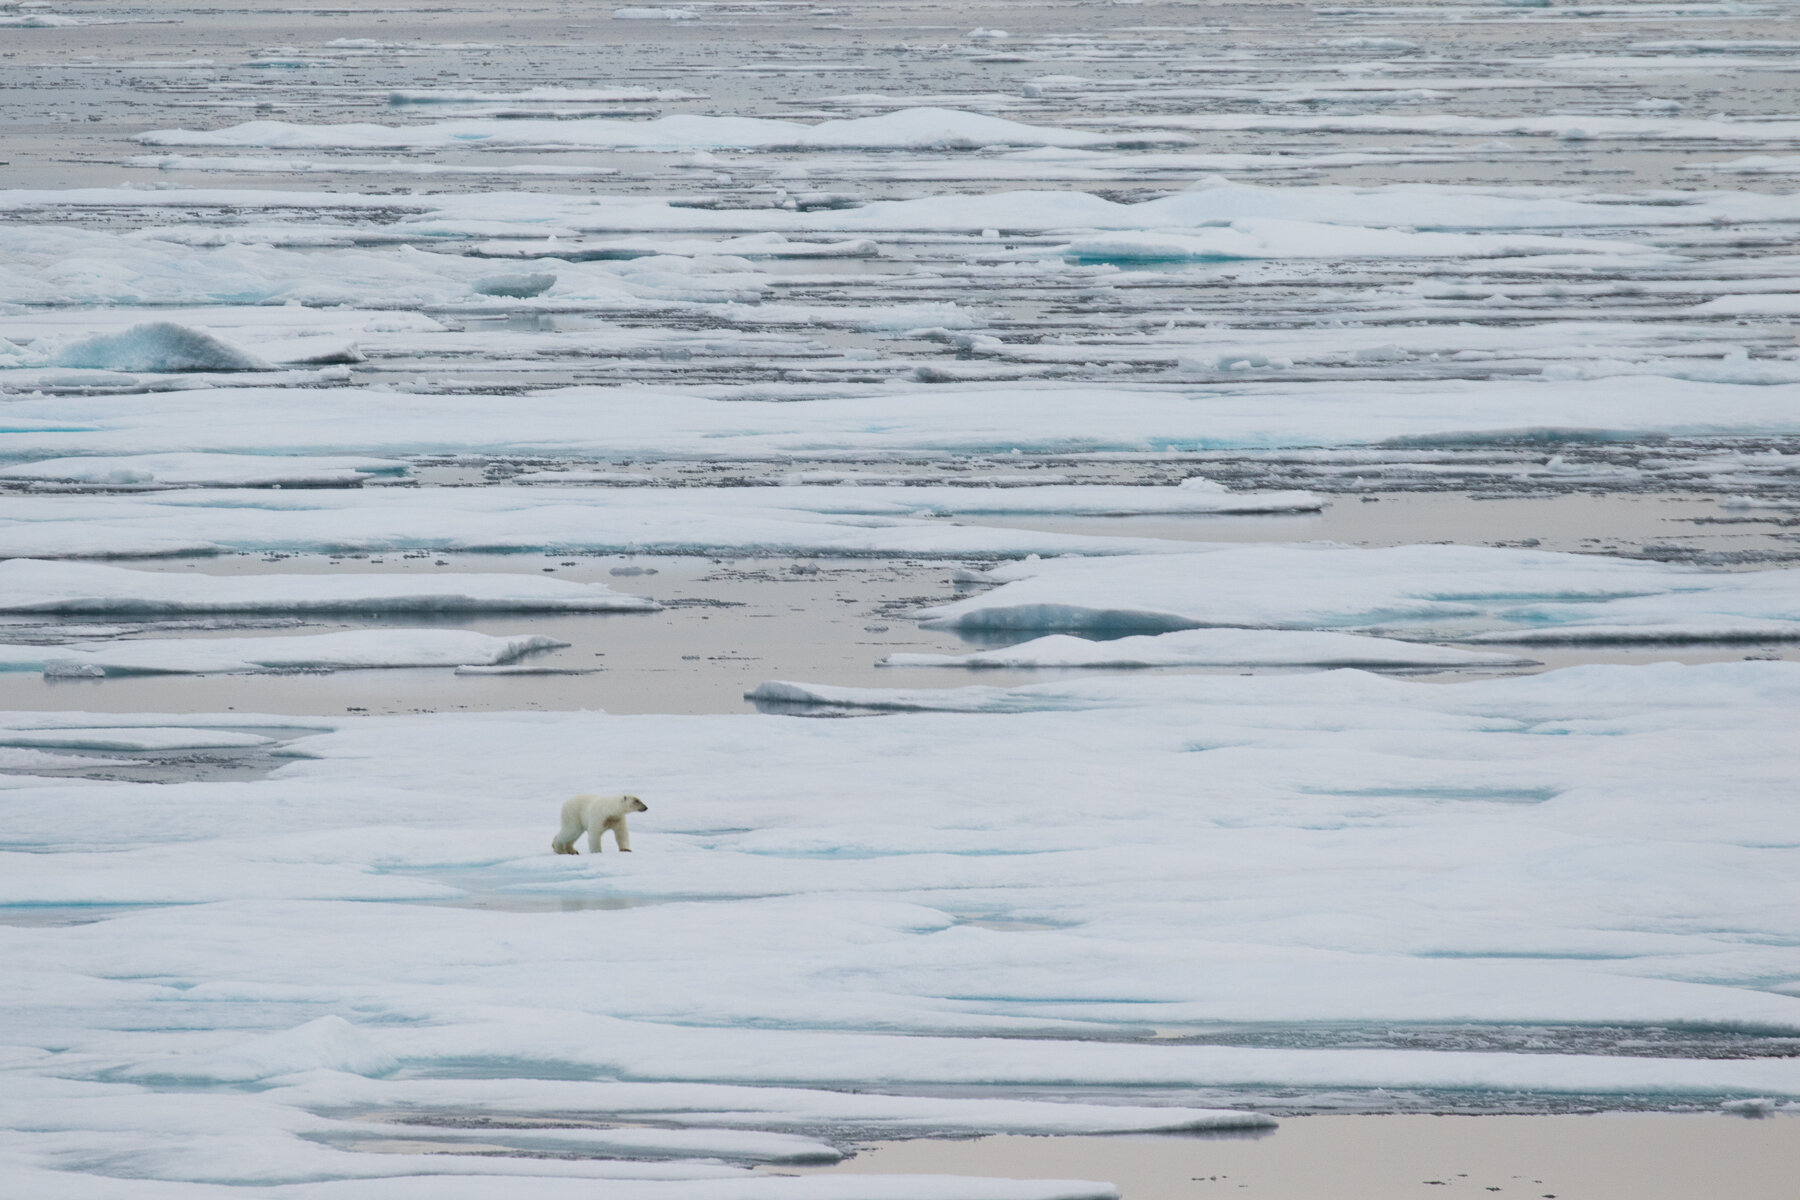  Canadian High Arctic - Polar Bear - Sense of place 